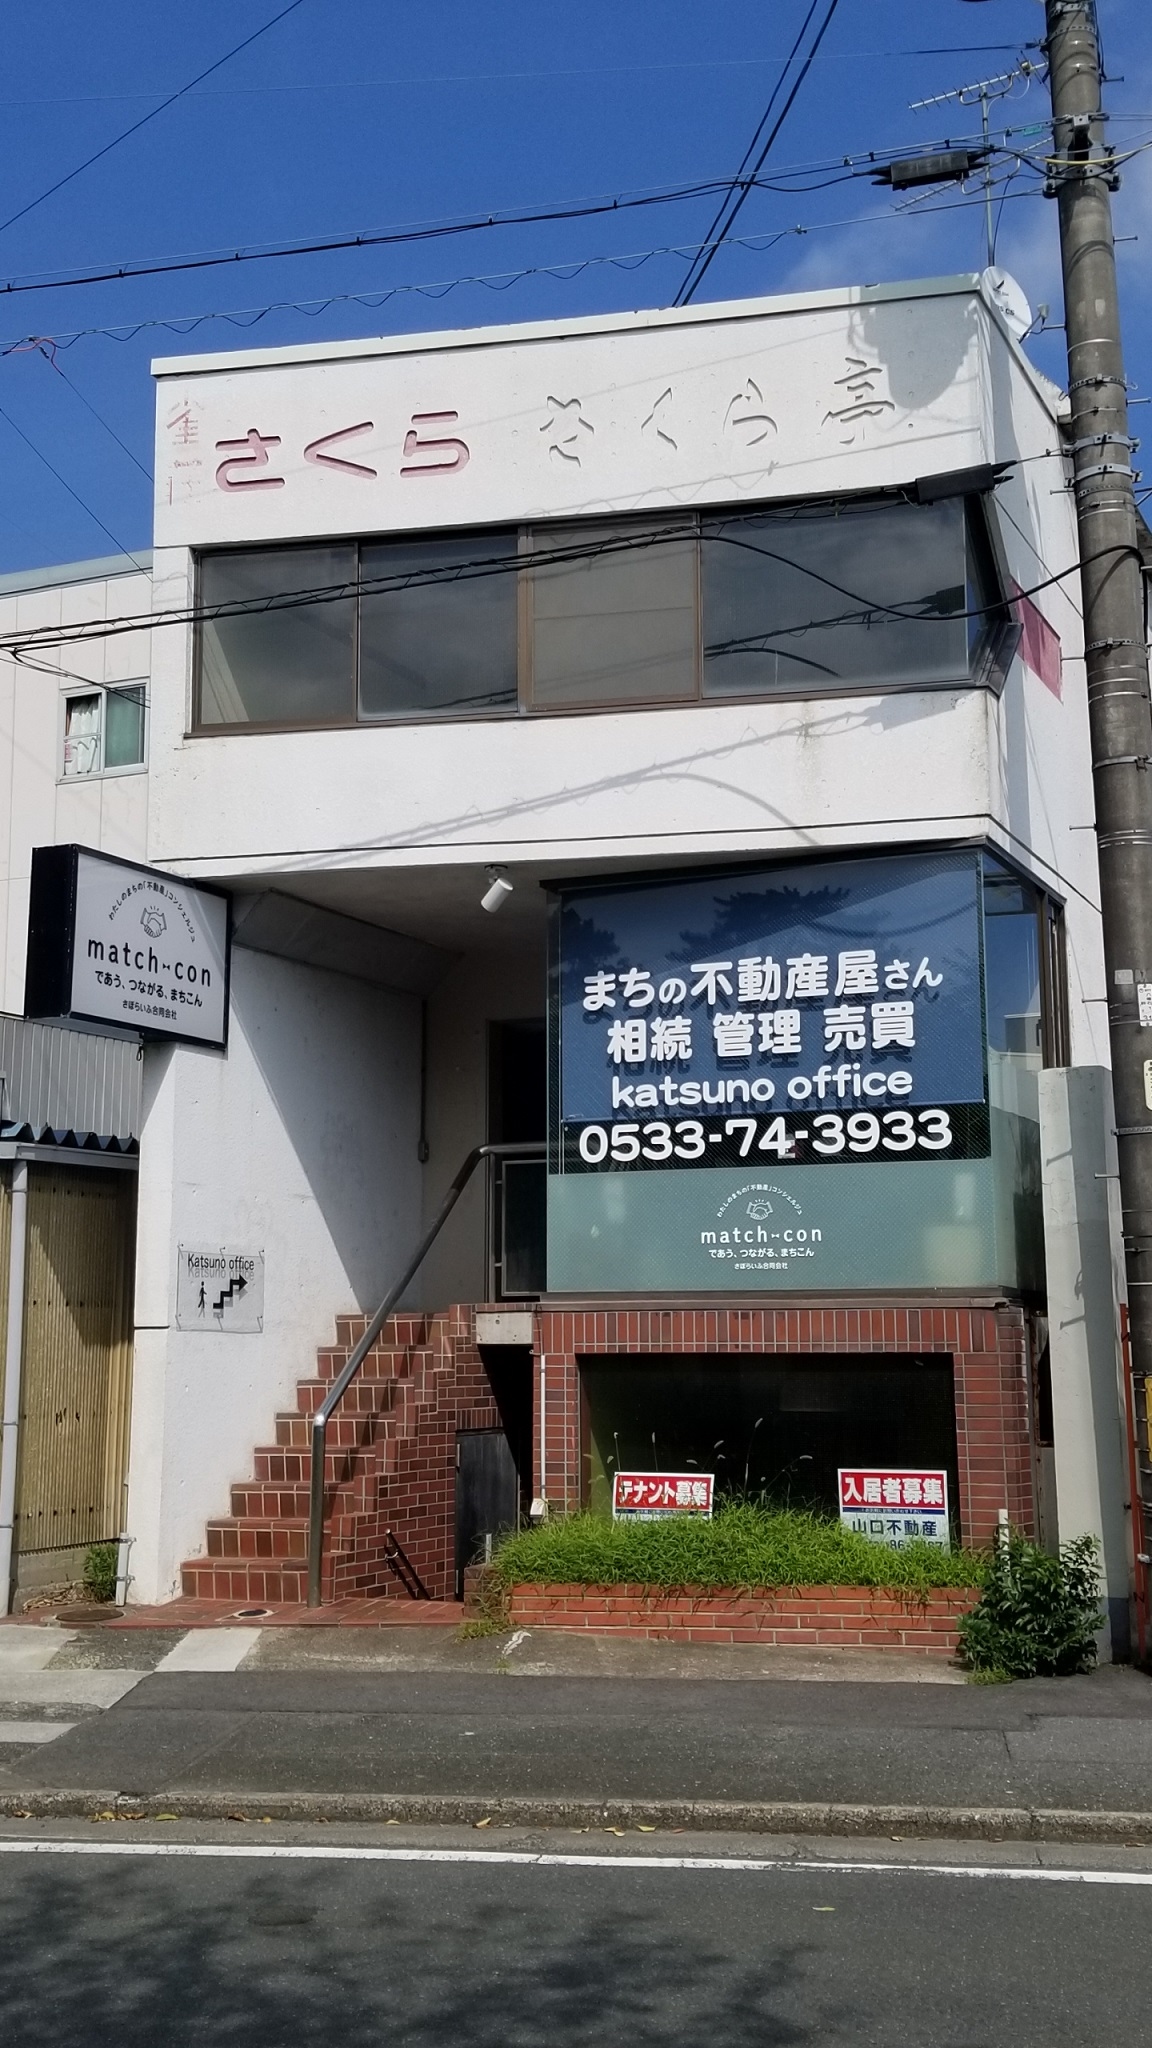 KATSUNO OFFICE